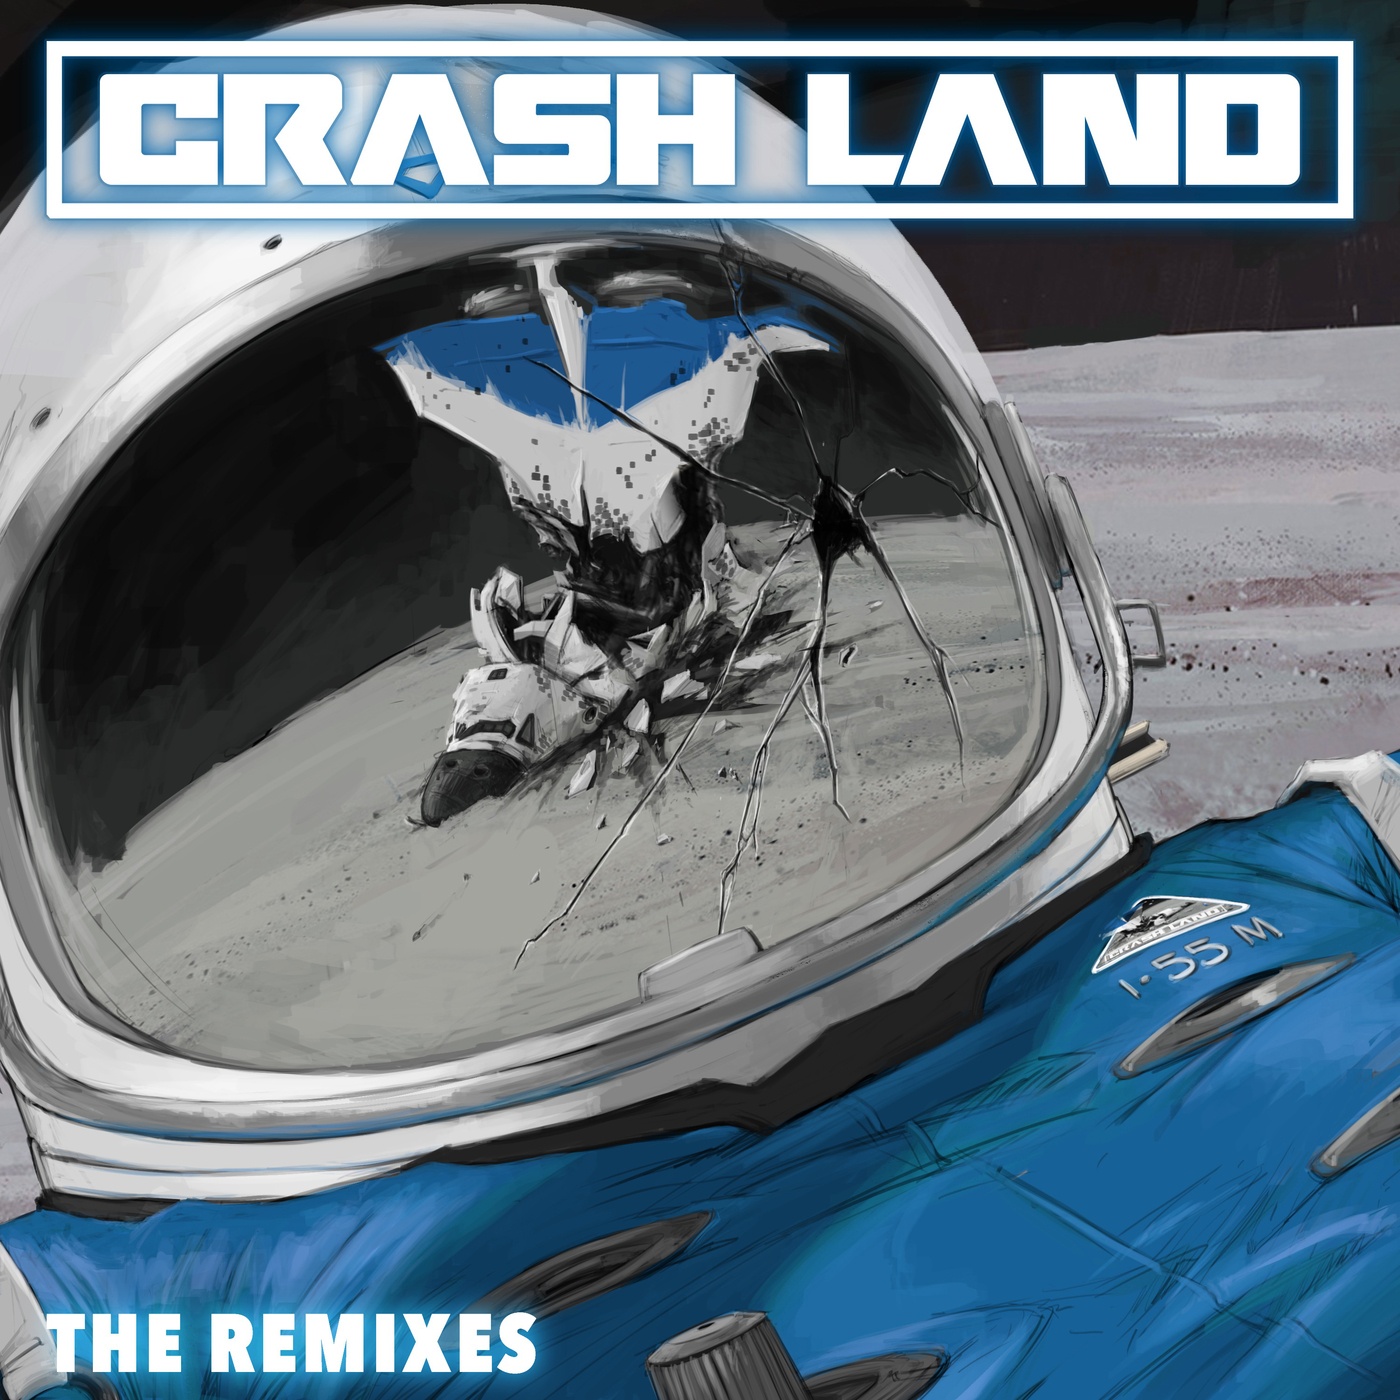 Crash Land (BIJOU Remix)